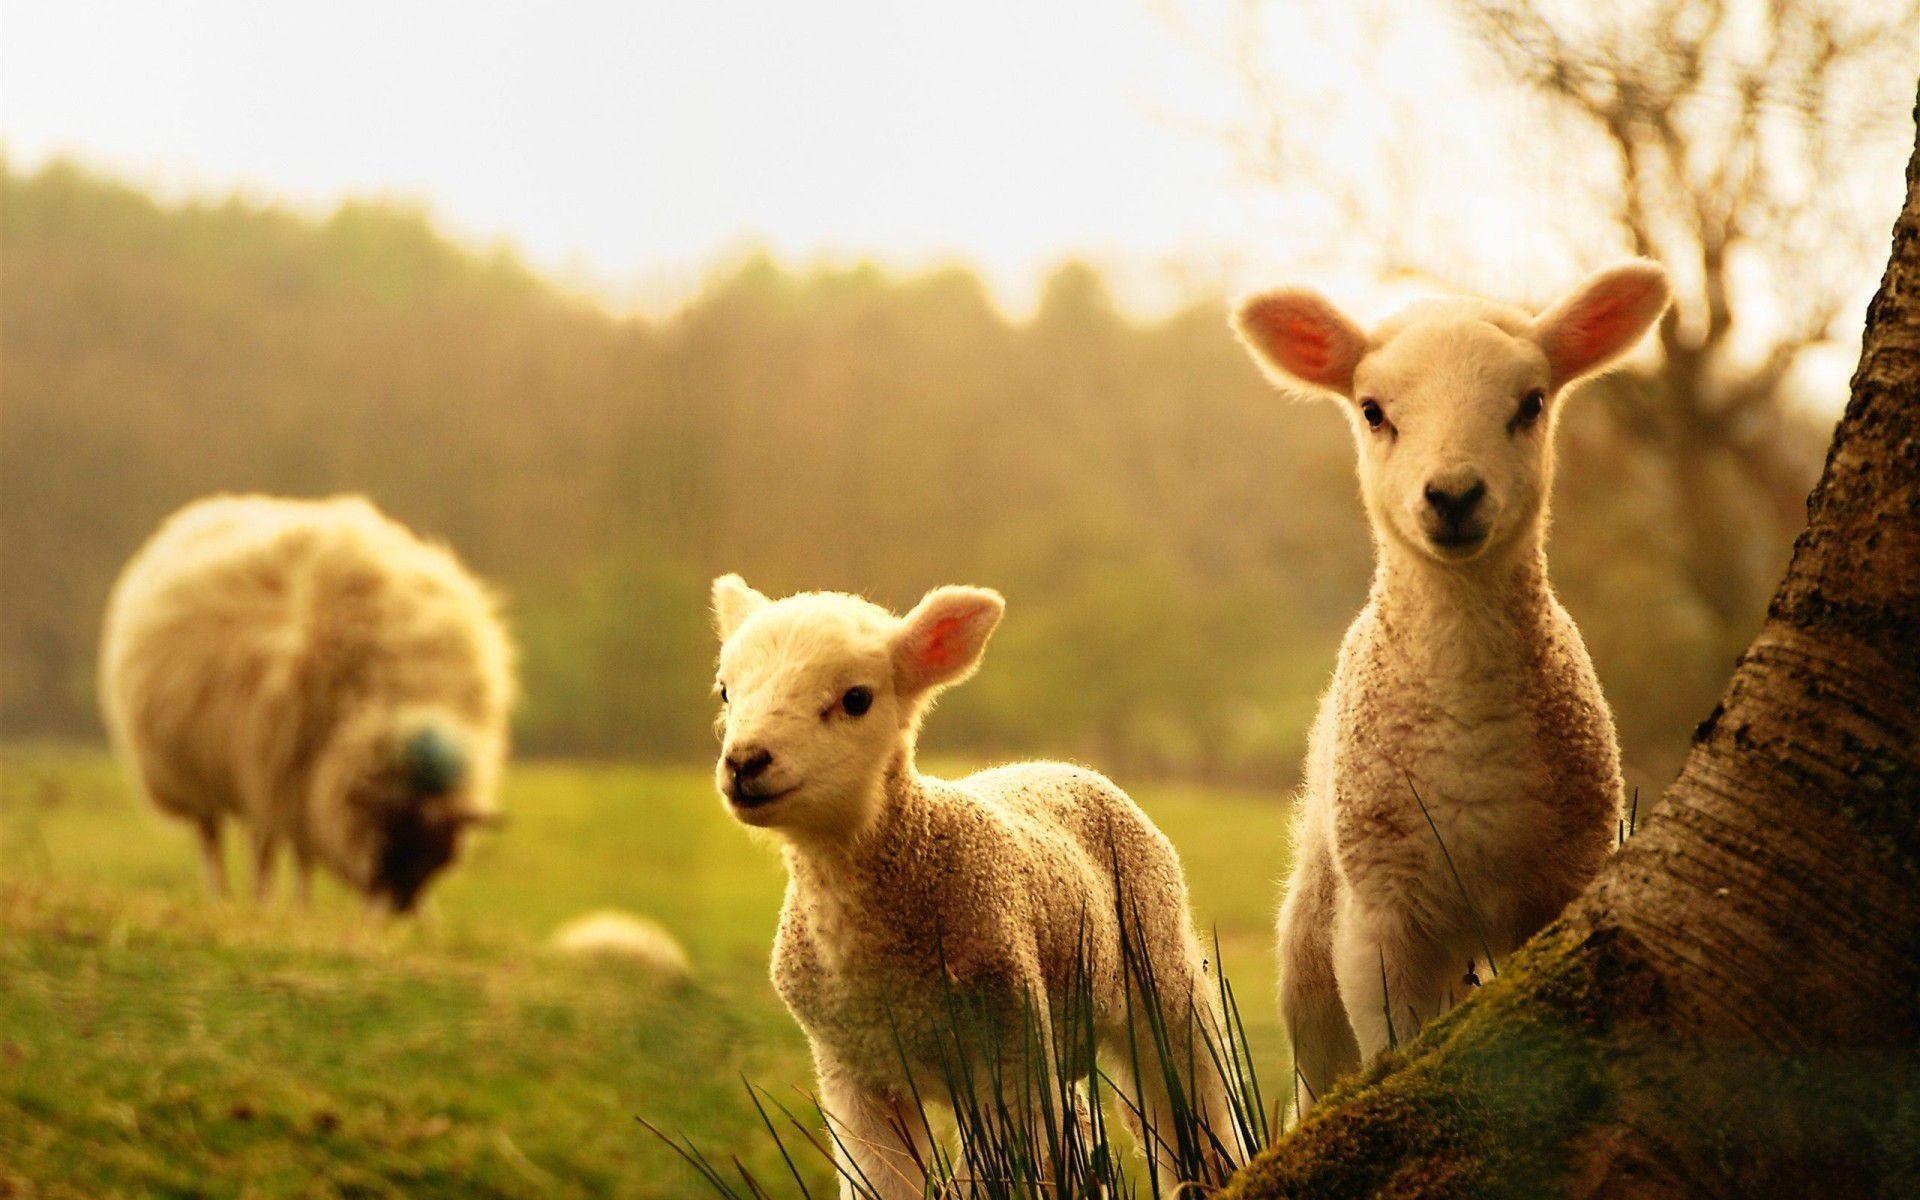 Two lambs in a field - Farm